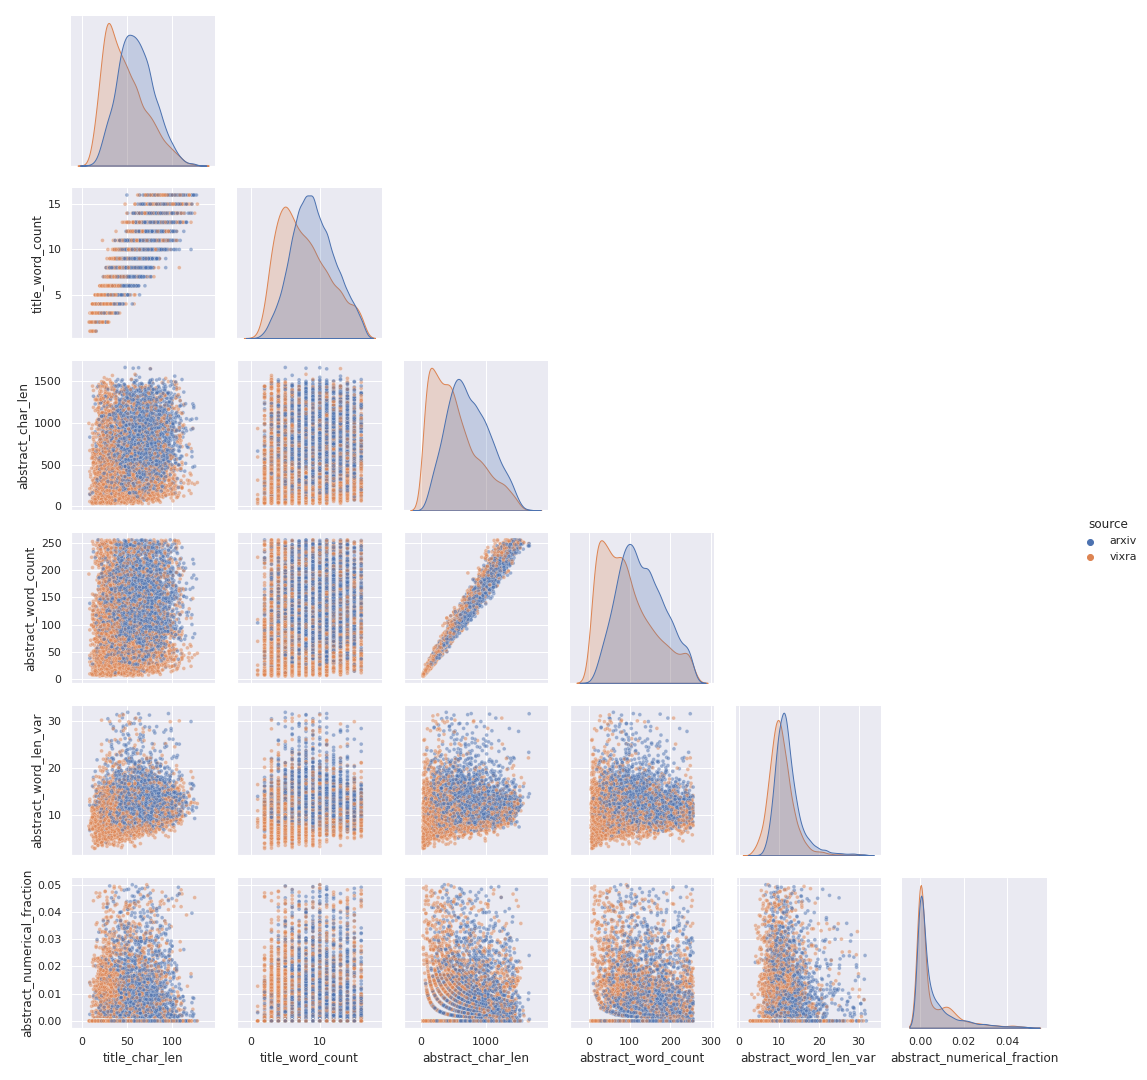 Corner plot of arxiv/vixra data